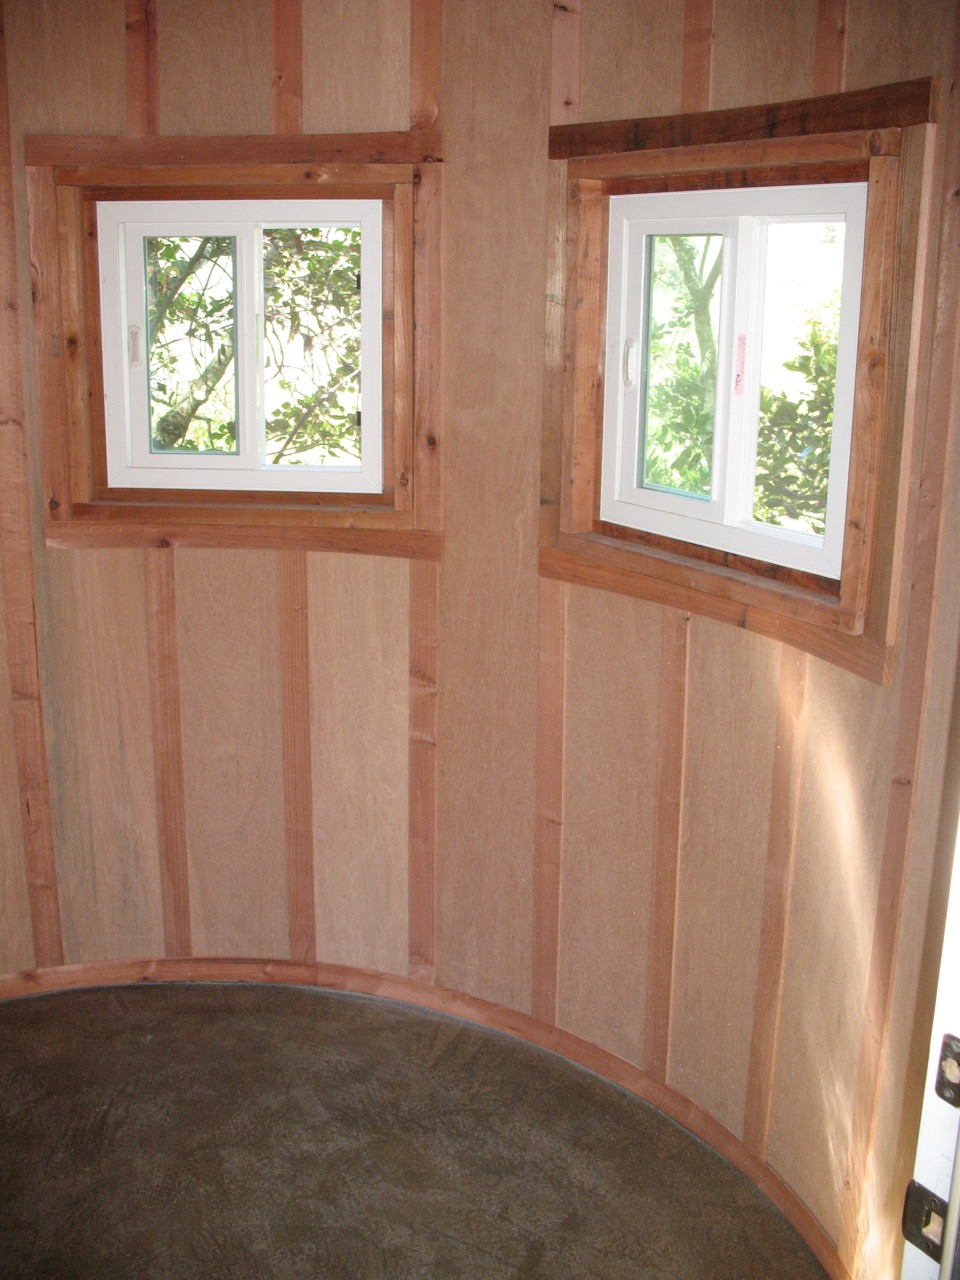 Interior window trim